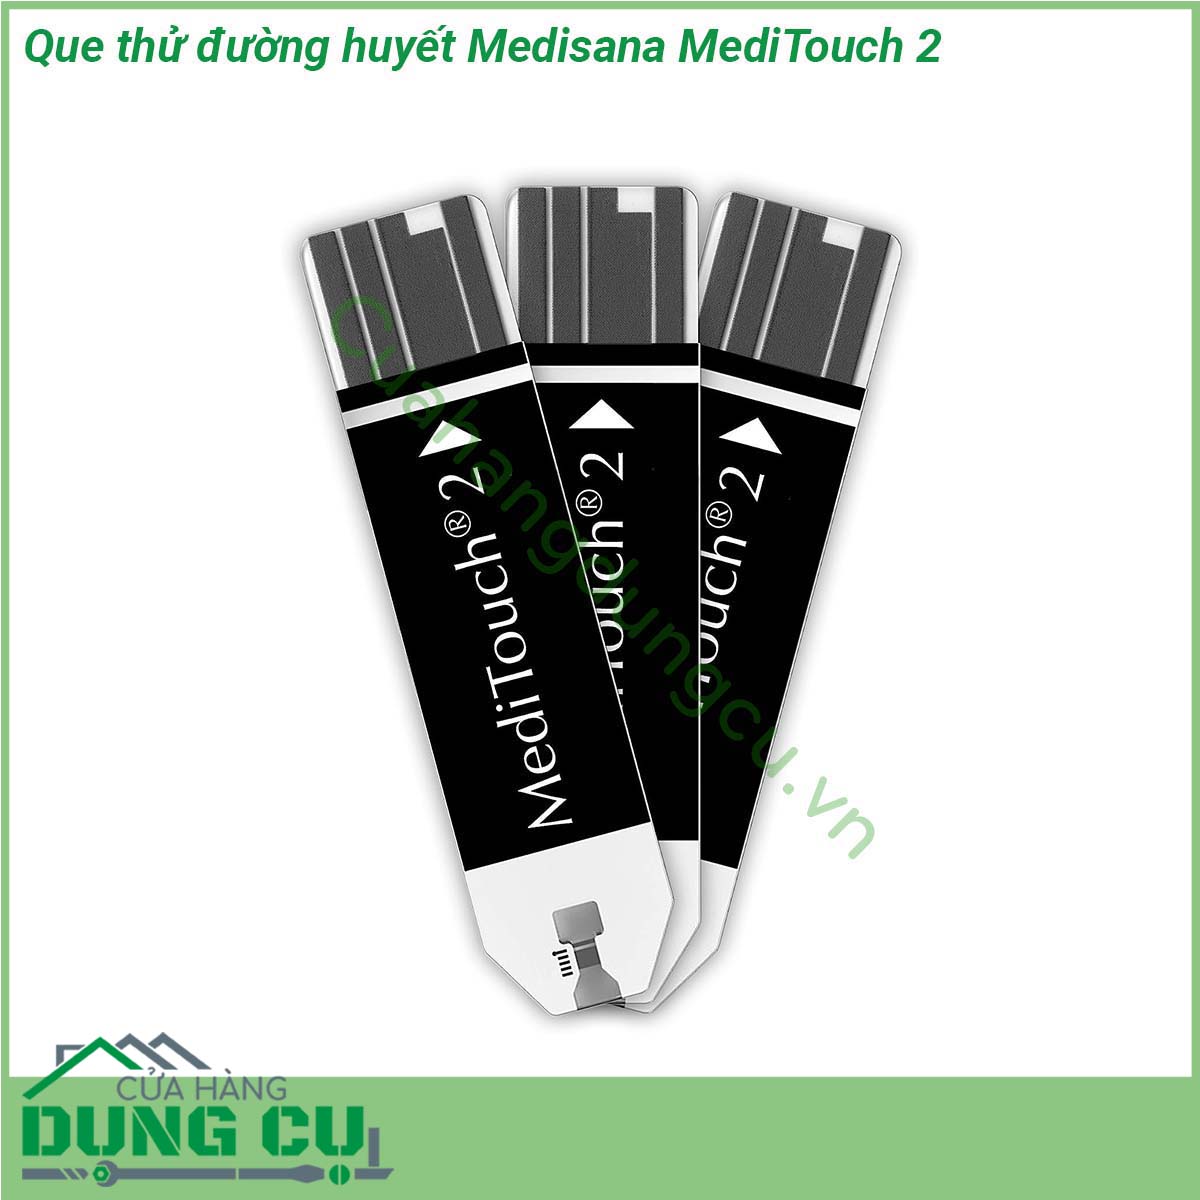 Que thử đường huyết Medisana MediTouch 2 là sản phẩm thiết bị y tế hiện đại thông minh cho phép bạn kiểm soát được lượng đường trong máu là bao nhiêu từ đó đưa ra chế độ ăn uống sinh hoạt khoa học và tốt nhất cho sức khỏe của bạn